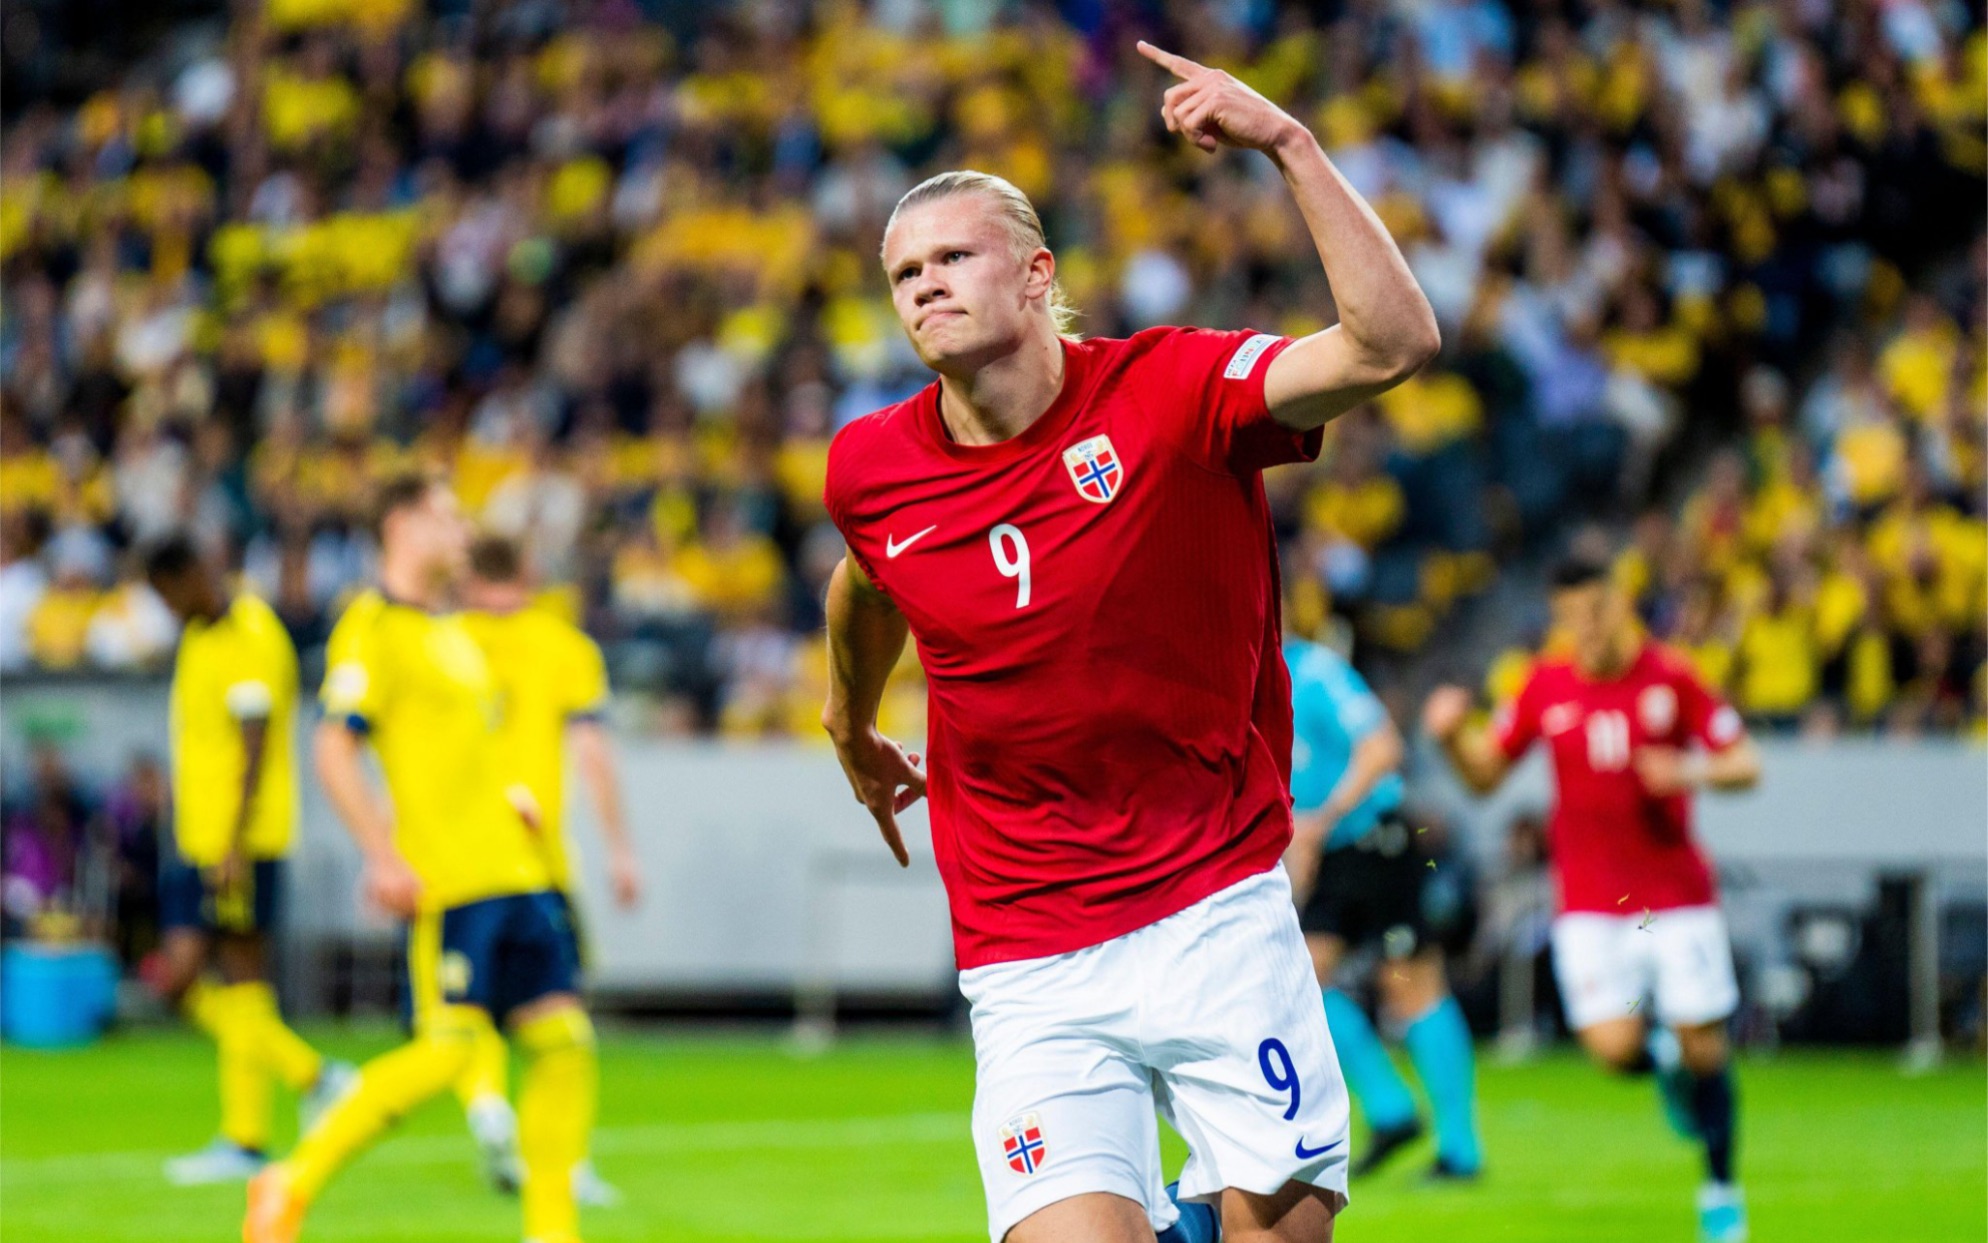 挪威哈兰德：世界杯挪威队的潜在黑马  在足球界，天才球员层出不穷，但能够在世界杯这样的舞台上崭露头角的年轻球员，更是备受瞩目。在2022年的卡塔尔世界杯上，挪威队的年轻前锋哈兰德以其出色的表现，成为了备受关注的潜在黑马。  哈兰德，这位年仅22岁的挪威天才，已经在欧洲足坛崭露头角。他凭借惊人的身体素质、出色的技术能力和敏锐的进球嗅觉，成为了各大豪门球队争相追逐的目标。在挪威国家队，哈兰德更是核心球员，肩负着带领球队冲击世界杯的重任。  在世界杯预选赛中，哈兰德就展现出了他的强大实力。他多次在关键时刻为球队挺身而出，用进球为挪威队锁定胜局。他的速度和力量让对手难以防范，而他的射门技术更是精准无比。在比赛中，哈兰德总是能够找到最佳的射门角度和时机，为球队创造进球机会。  然而，世界杯赛场上的竞争异常激烈，各支球队都拥有实力强劲的球员和战术体系。对于挪威队来说，要想在世界杯上有所作为，不仅需要哈兰德这样的天才球员发挥出色，还需要整个团队的协作和配合。  幸运的是，挪威队拥有一批优秀的球员和教练团队。他们在比赛中能够充分发挥自己的特点，与哈兰德形成默契的配合。在进攻端，哈兰德能够与队友们打出精彩的配合，创造出更多的进球机会；在防守端，他也能够积极参与球队的防守，为球队保住胜利果实。  当然，作为一支年轻的球队，挪威队在世界杯上也会面临一些挑战和困难。他们需要不断调整自己的战术和策略，适应不同对手的风格和特点。而哈兰德作为球队的核心球员，也需要承担更多的责任和压力，带领球队克服各种困难，向更高的目标迈进。  总的来说，哈兰德作为挪威队的潜在黑马，在世界杯赛场上展现出了他的强大实力和潜力。他的出色表现和领袖气质让人们看到了挪威足球的希望和未来。虽然挪威队在世界杯上的征程充满了挑战和不确定性，但有了哈兰德这样的天才球员的带领，相信他们一定能够在未来的比赛中取得更好的成绩，为球迷们带来更多的惊喜和感动。